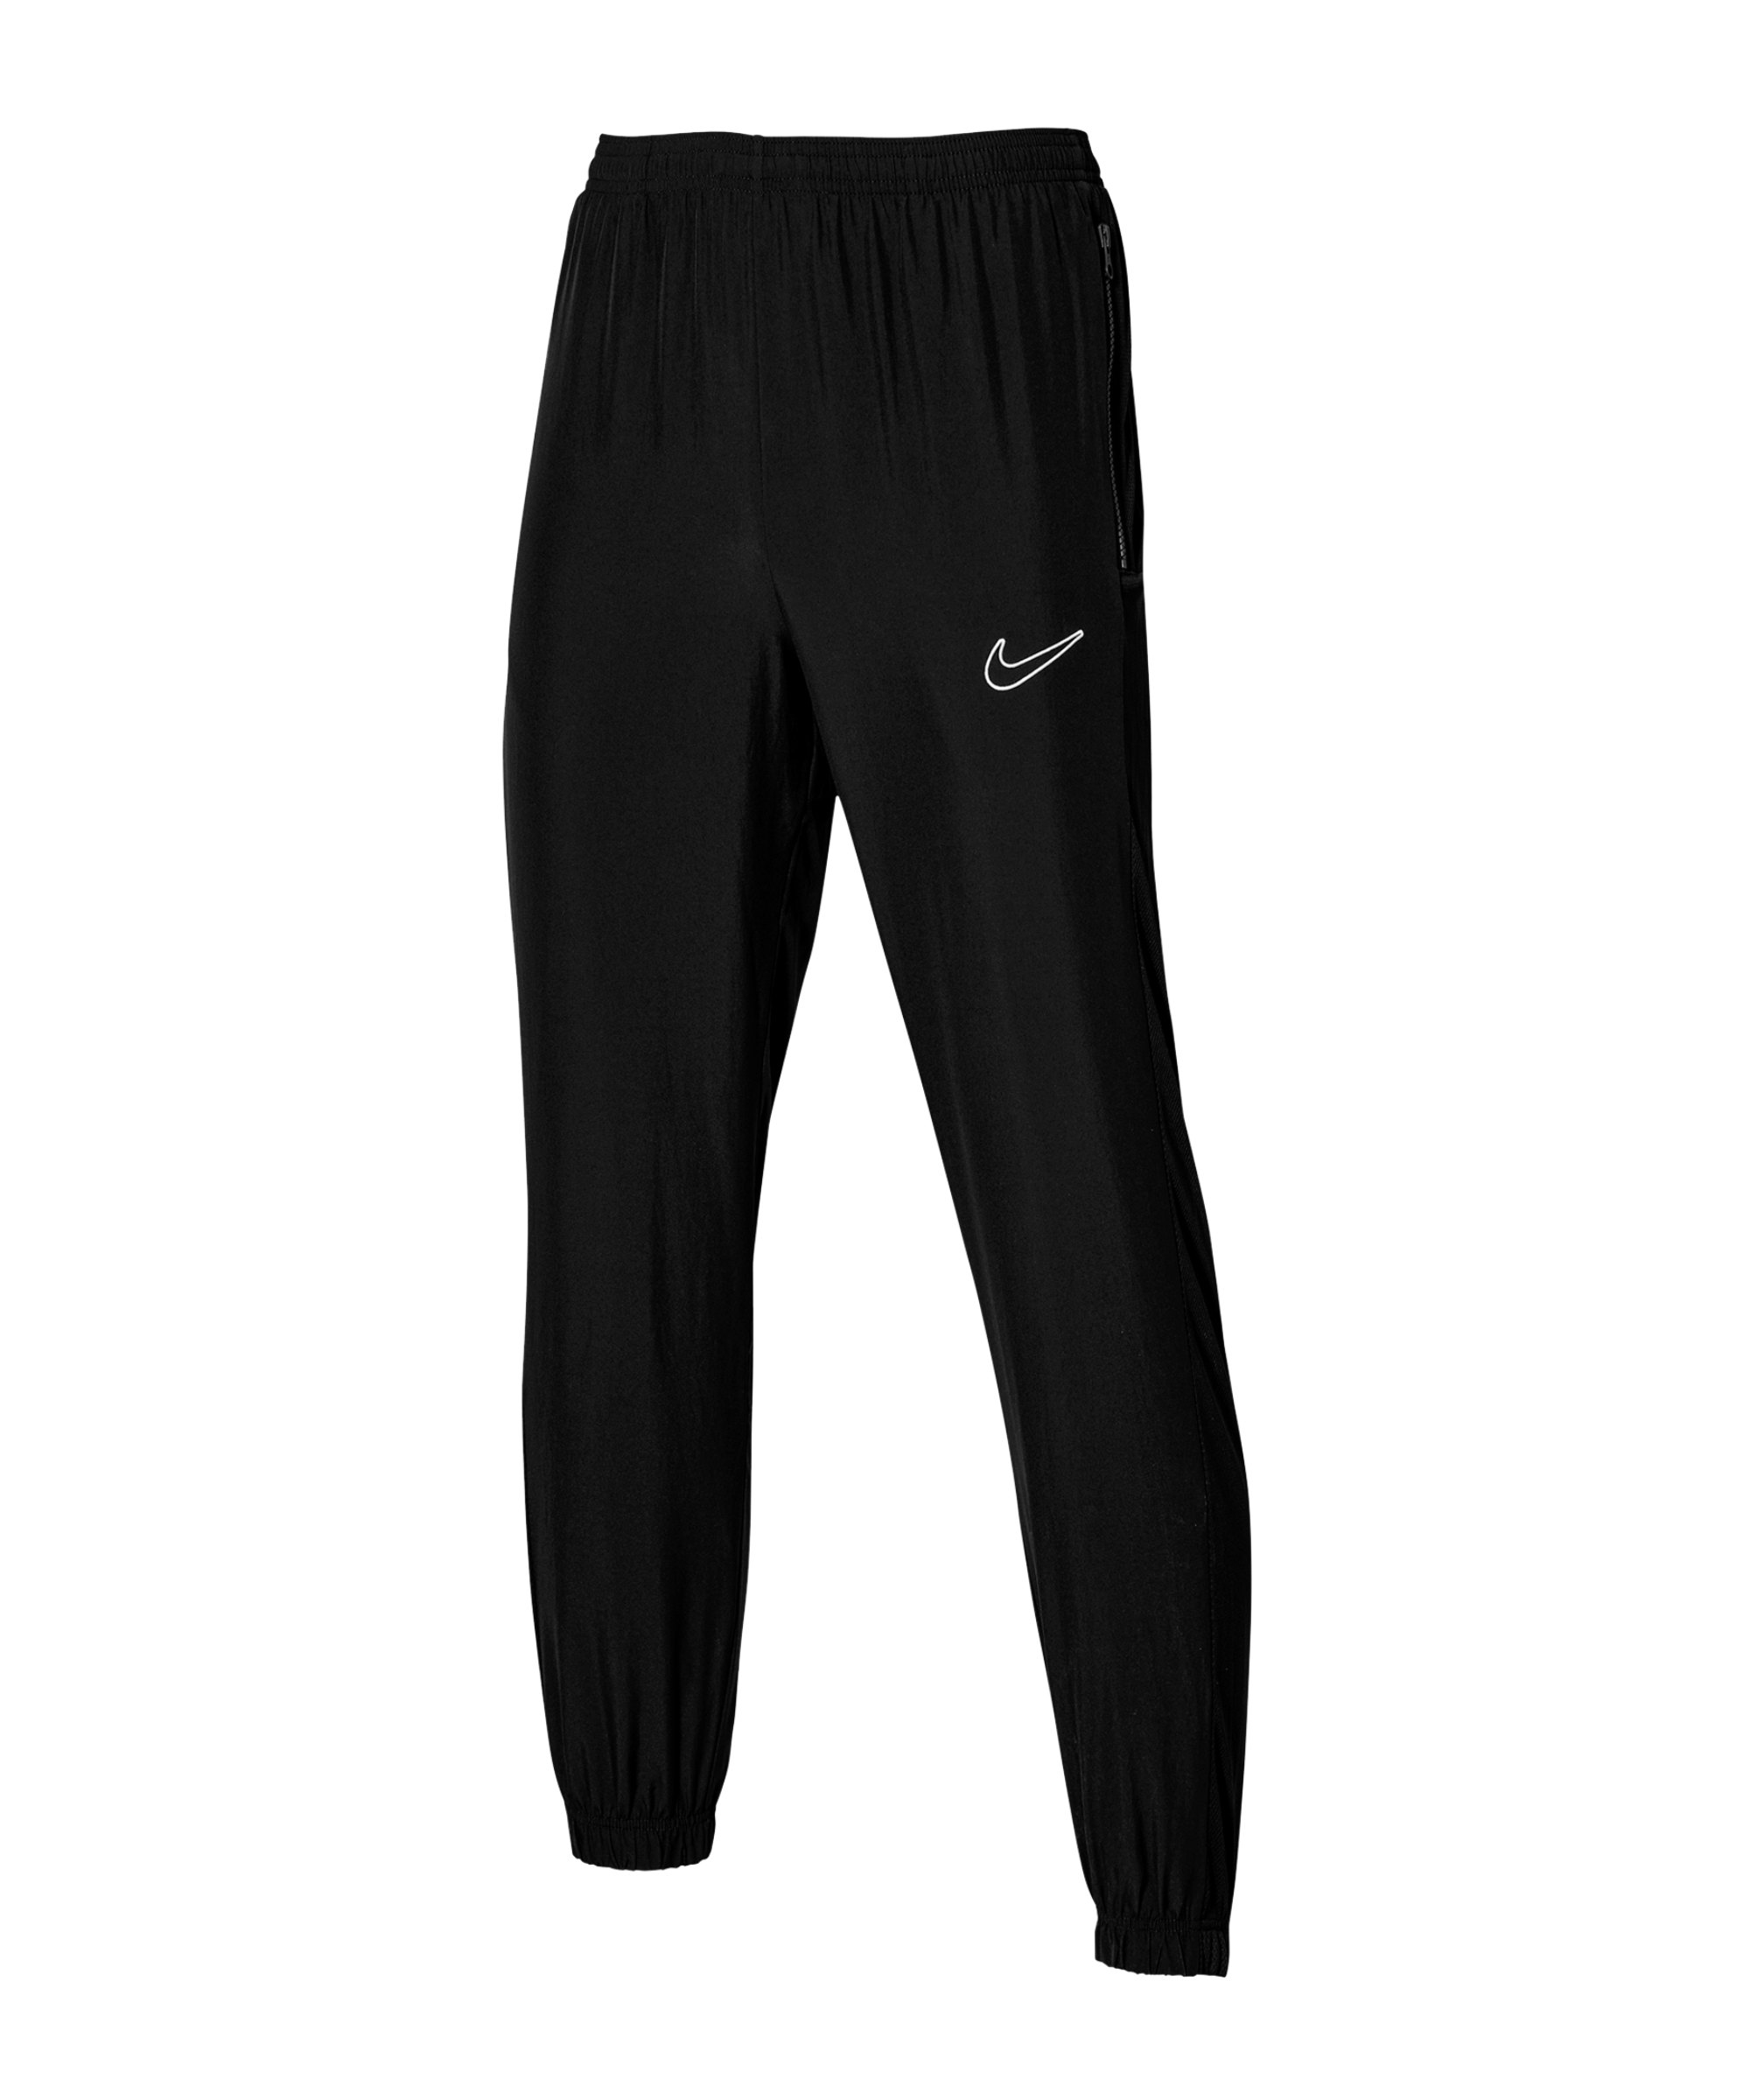 Nike Academy Woven Trainingshose Schwarz F010 - schwarz